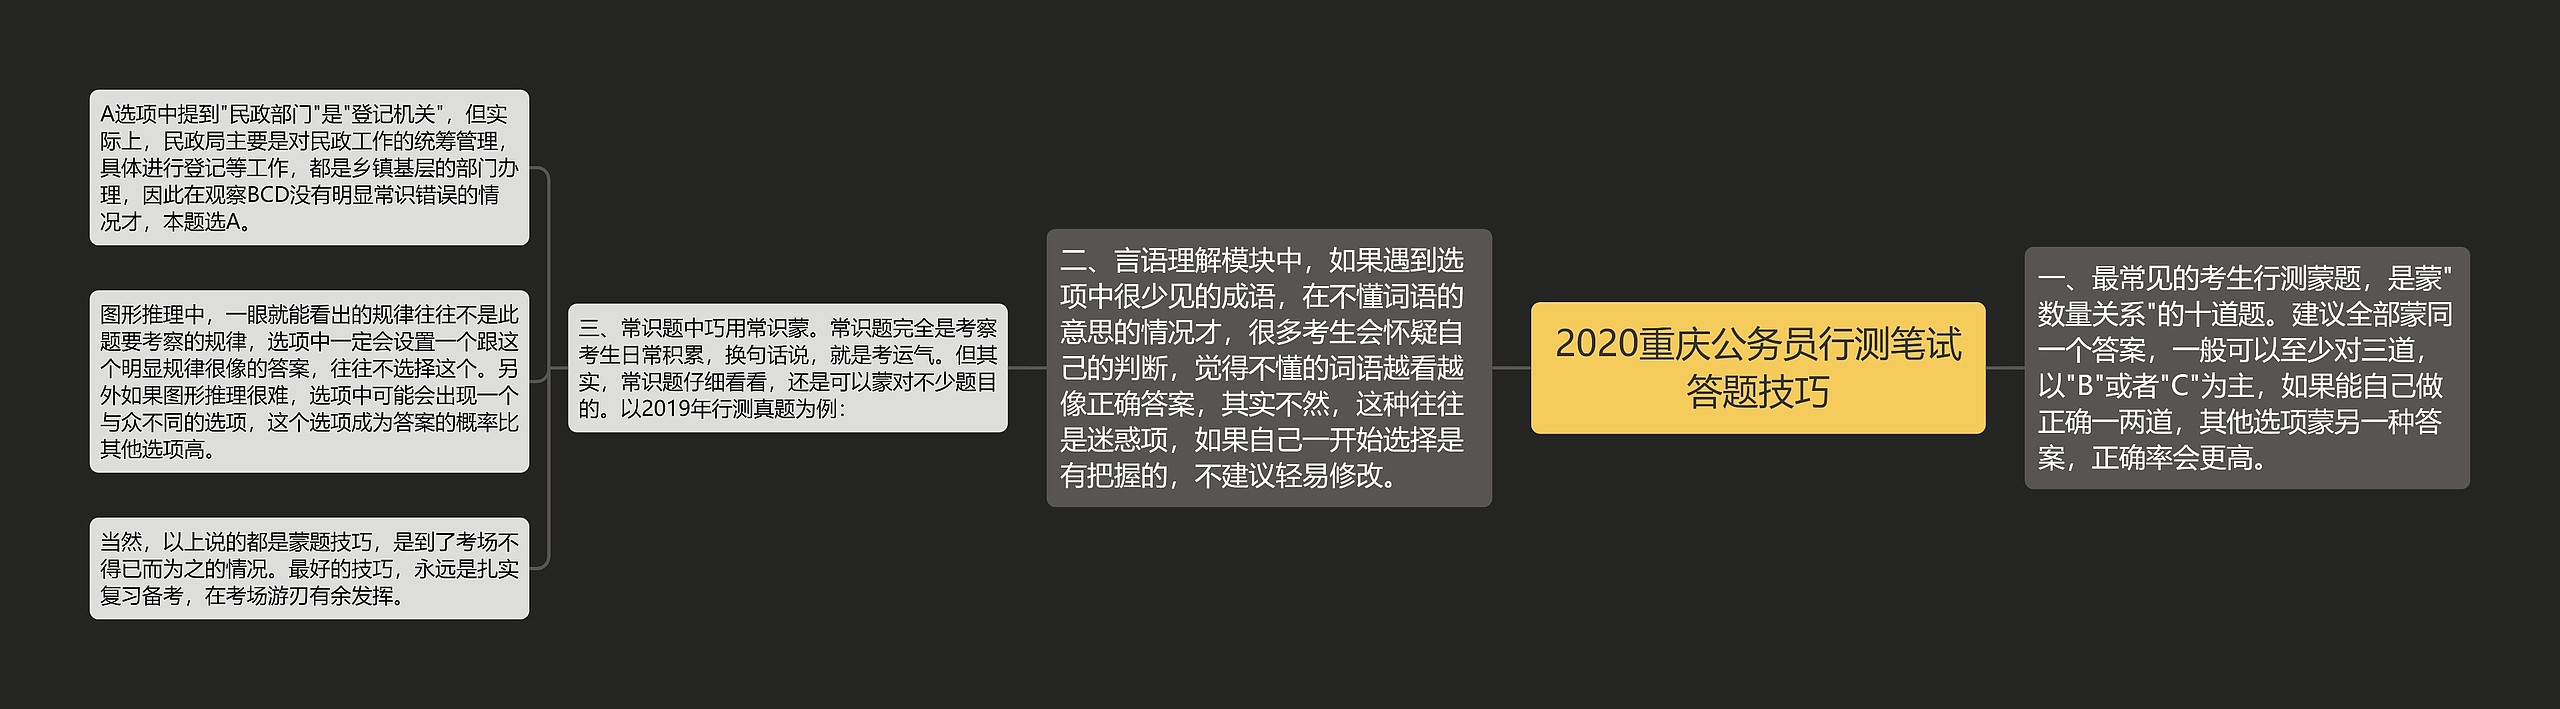 2020重庆公务员行测笔试答题技巧思维导图